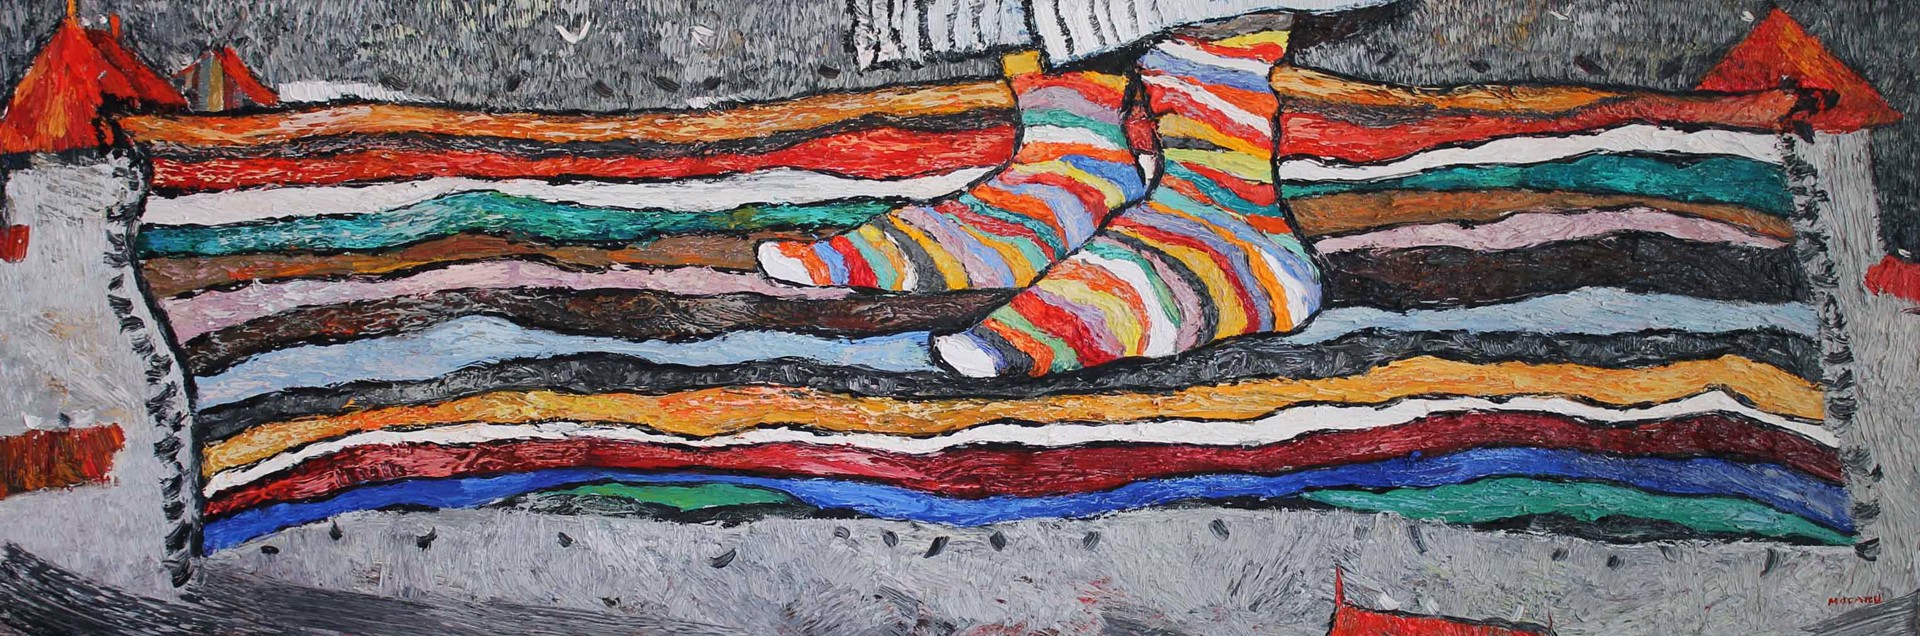 Happy Feet by Stefan Mocanu